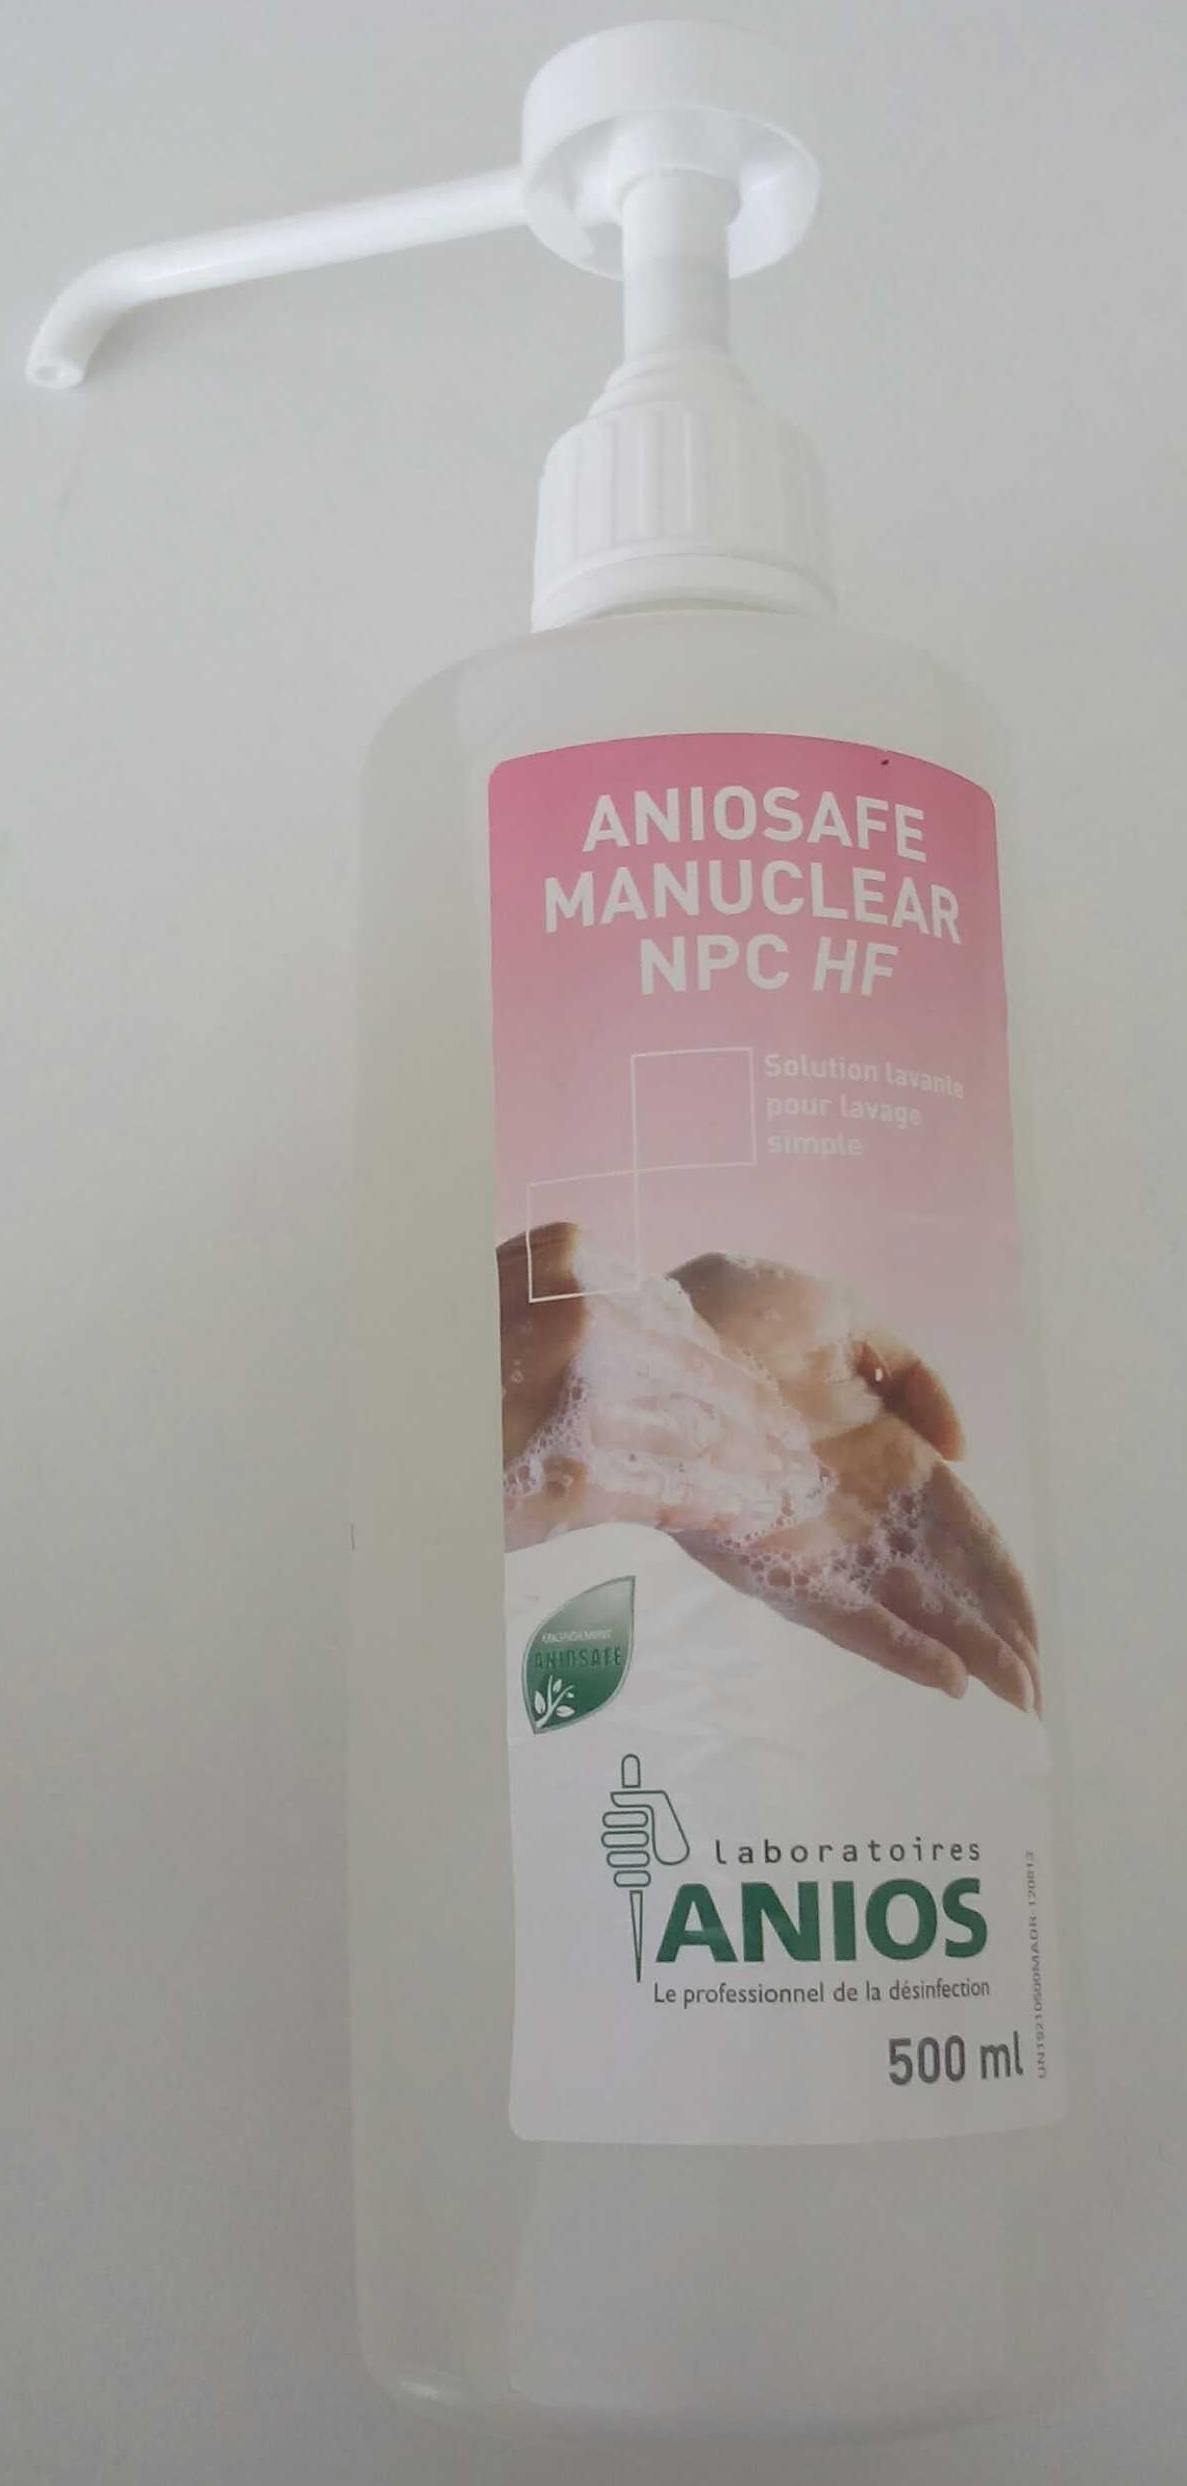 Aniosafe Manuclear NPC HF - Produkt - fr